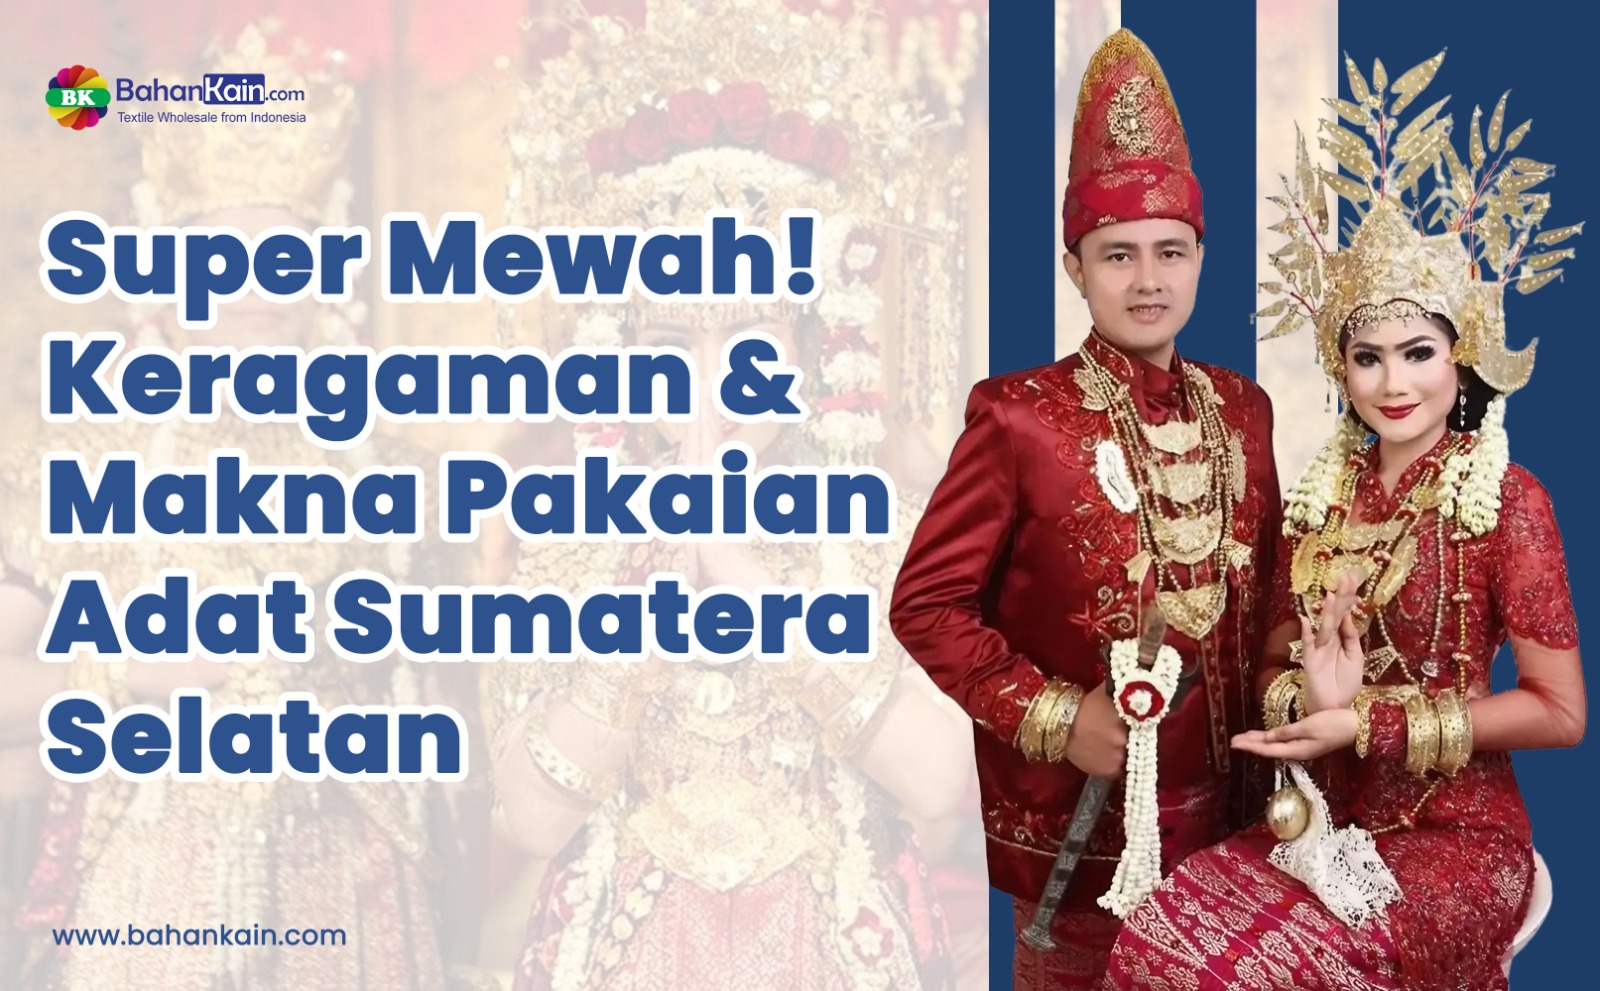 Keragaman dan Makna Pakaian Adat Sumatera Selatan yang Super Mewah!